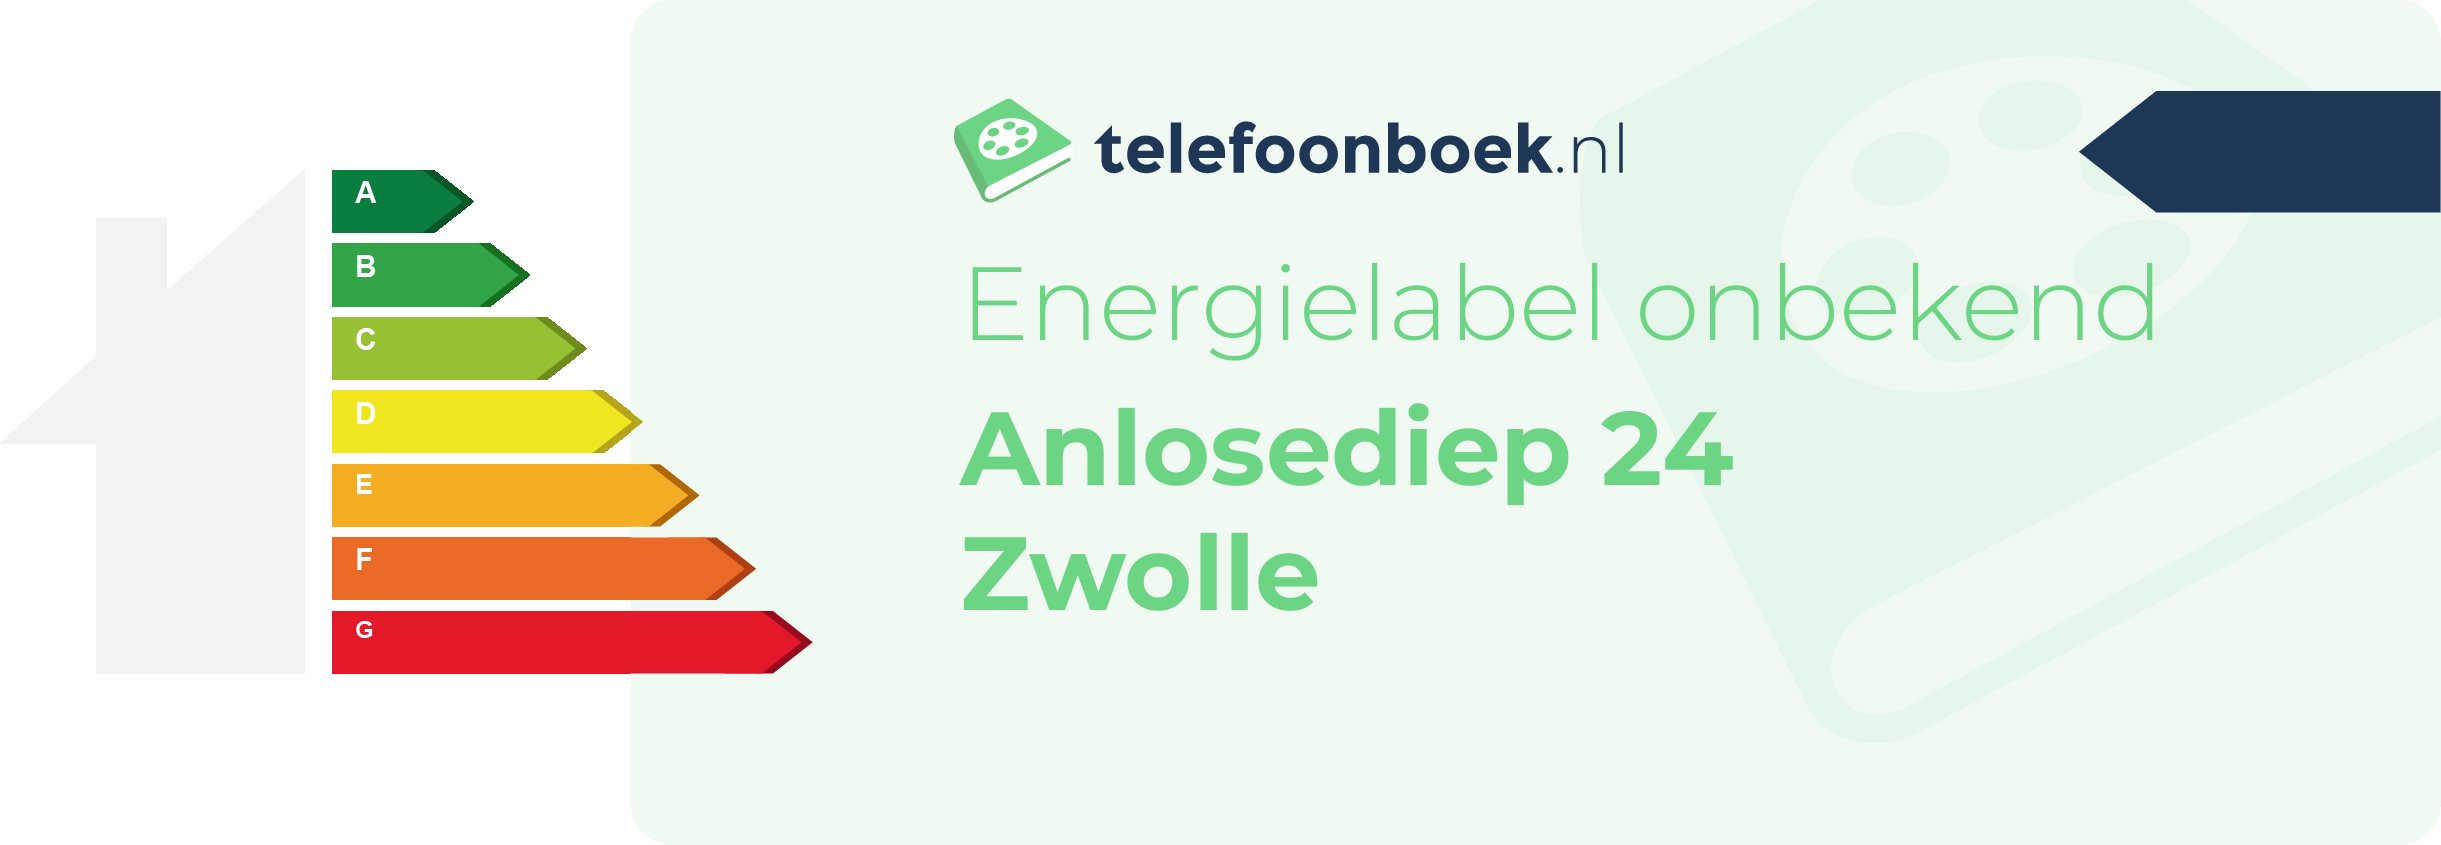 Energielabel Anlosediep 24 Zwolle